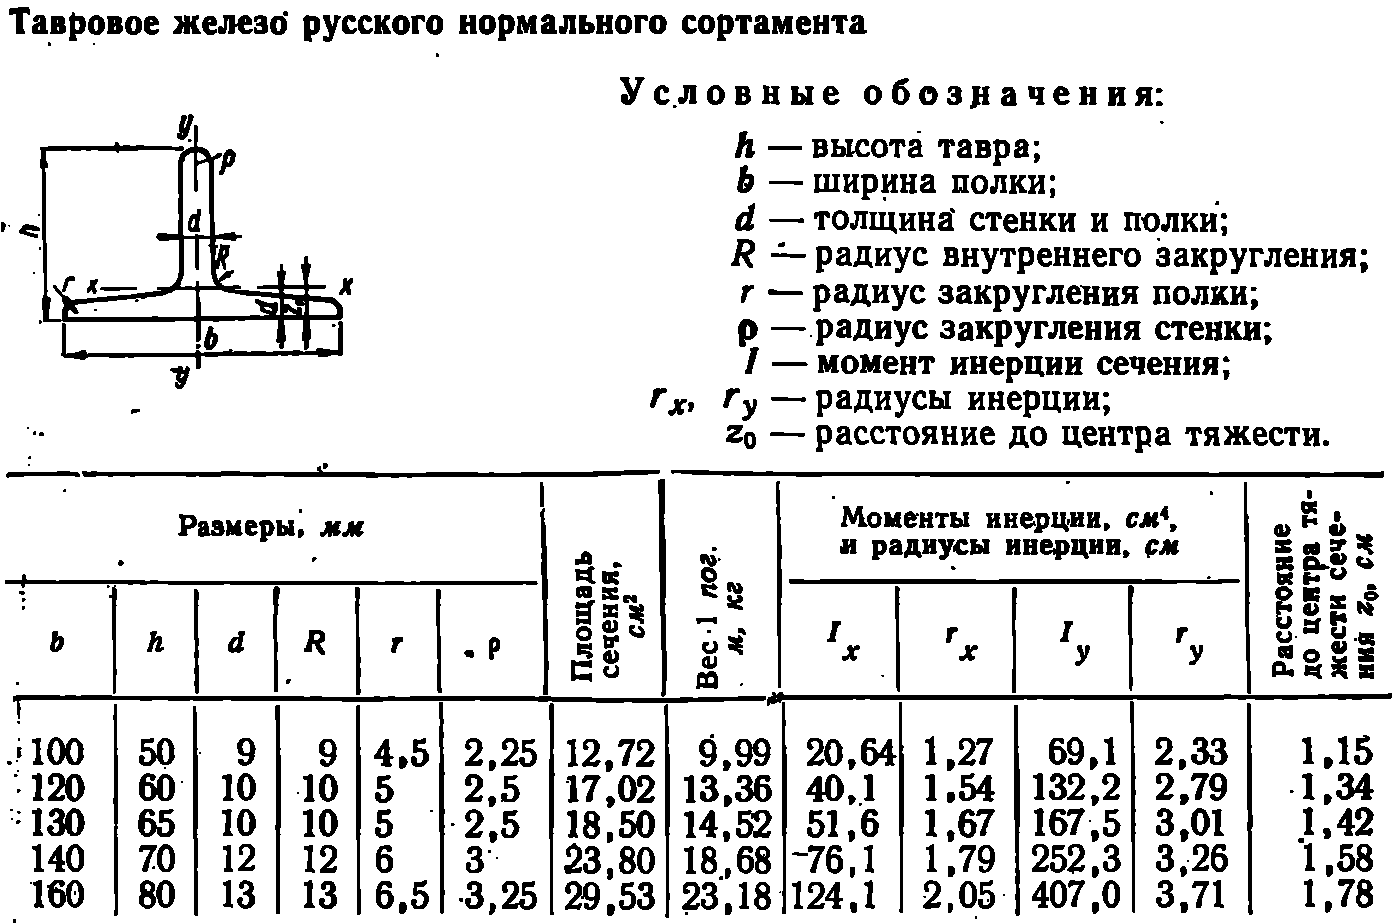 Вес балки 25б1: Балка 25Б1 - купить двутавровые балки в Москве (цена)